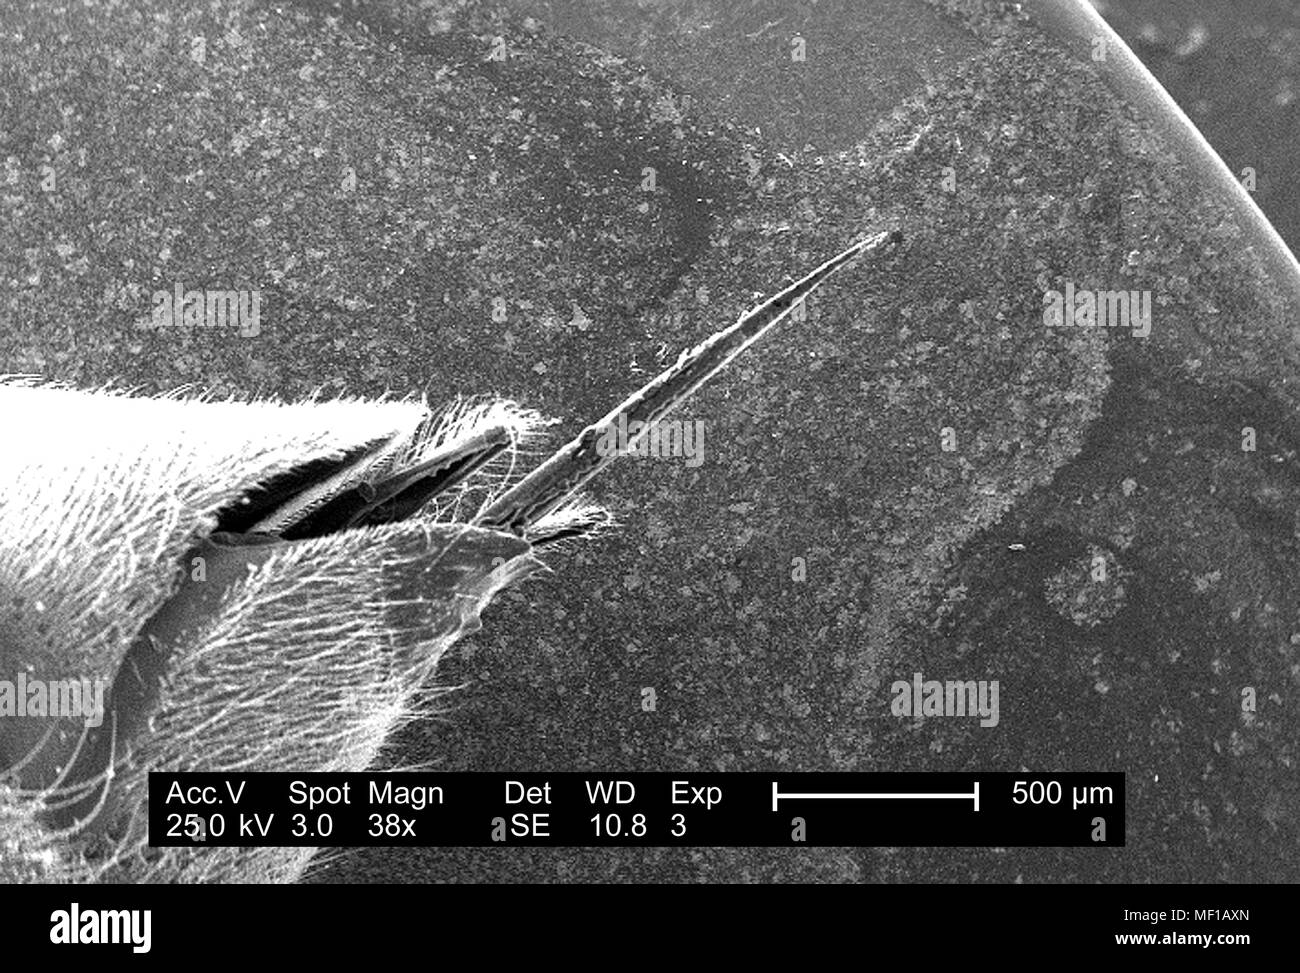 Ultrastrutturali dettagli morfologiche di un misterioso hymenopteran insetto apparato stinger, raffigurato in 38x di scansione ingrandita al microscopio elettronico (SEM) immagine, 2005. Immagine cortesia di centri per il controllo delle malattie (CDC) / Janice Haney Carr. () Foto Stock